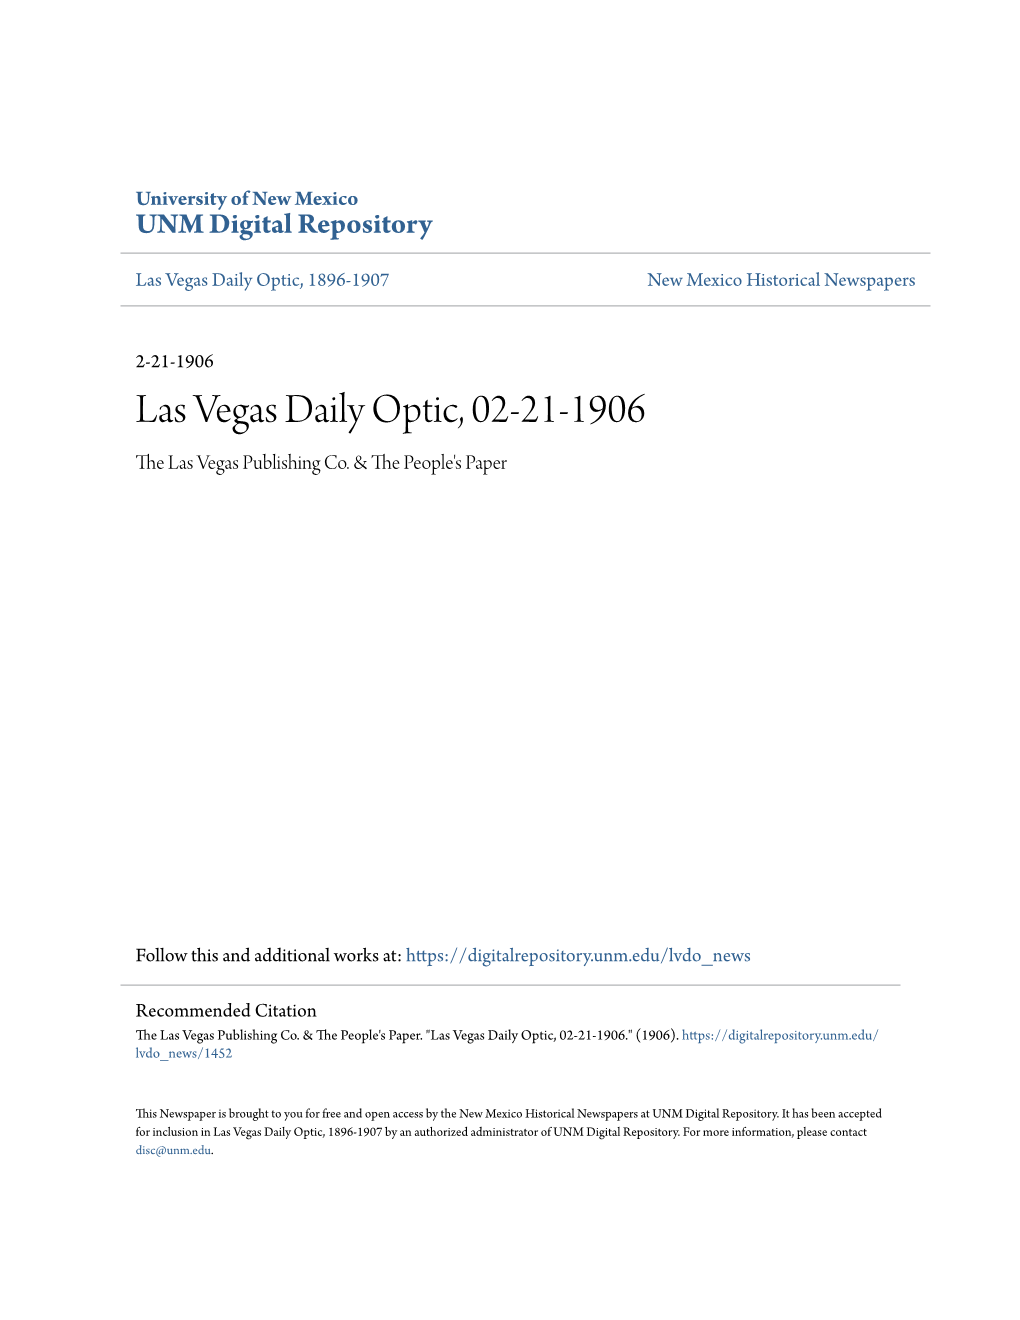 Las Vegas Daily Optic, 02-21-1906 the Las Vegas Publishing Co